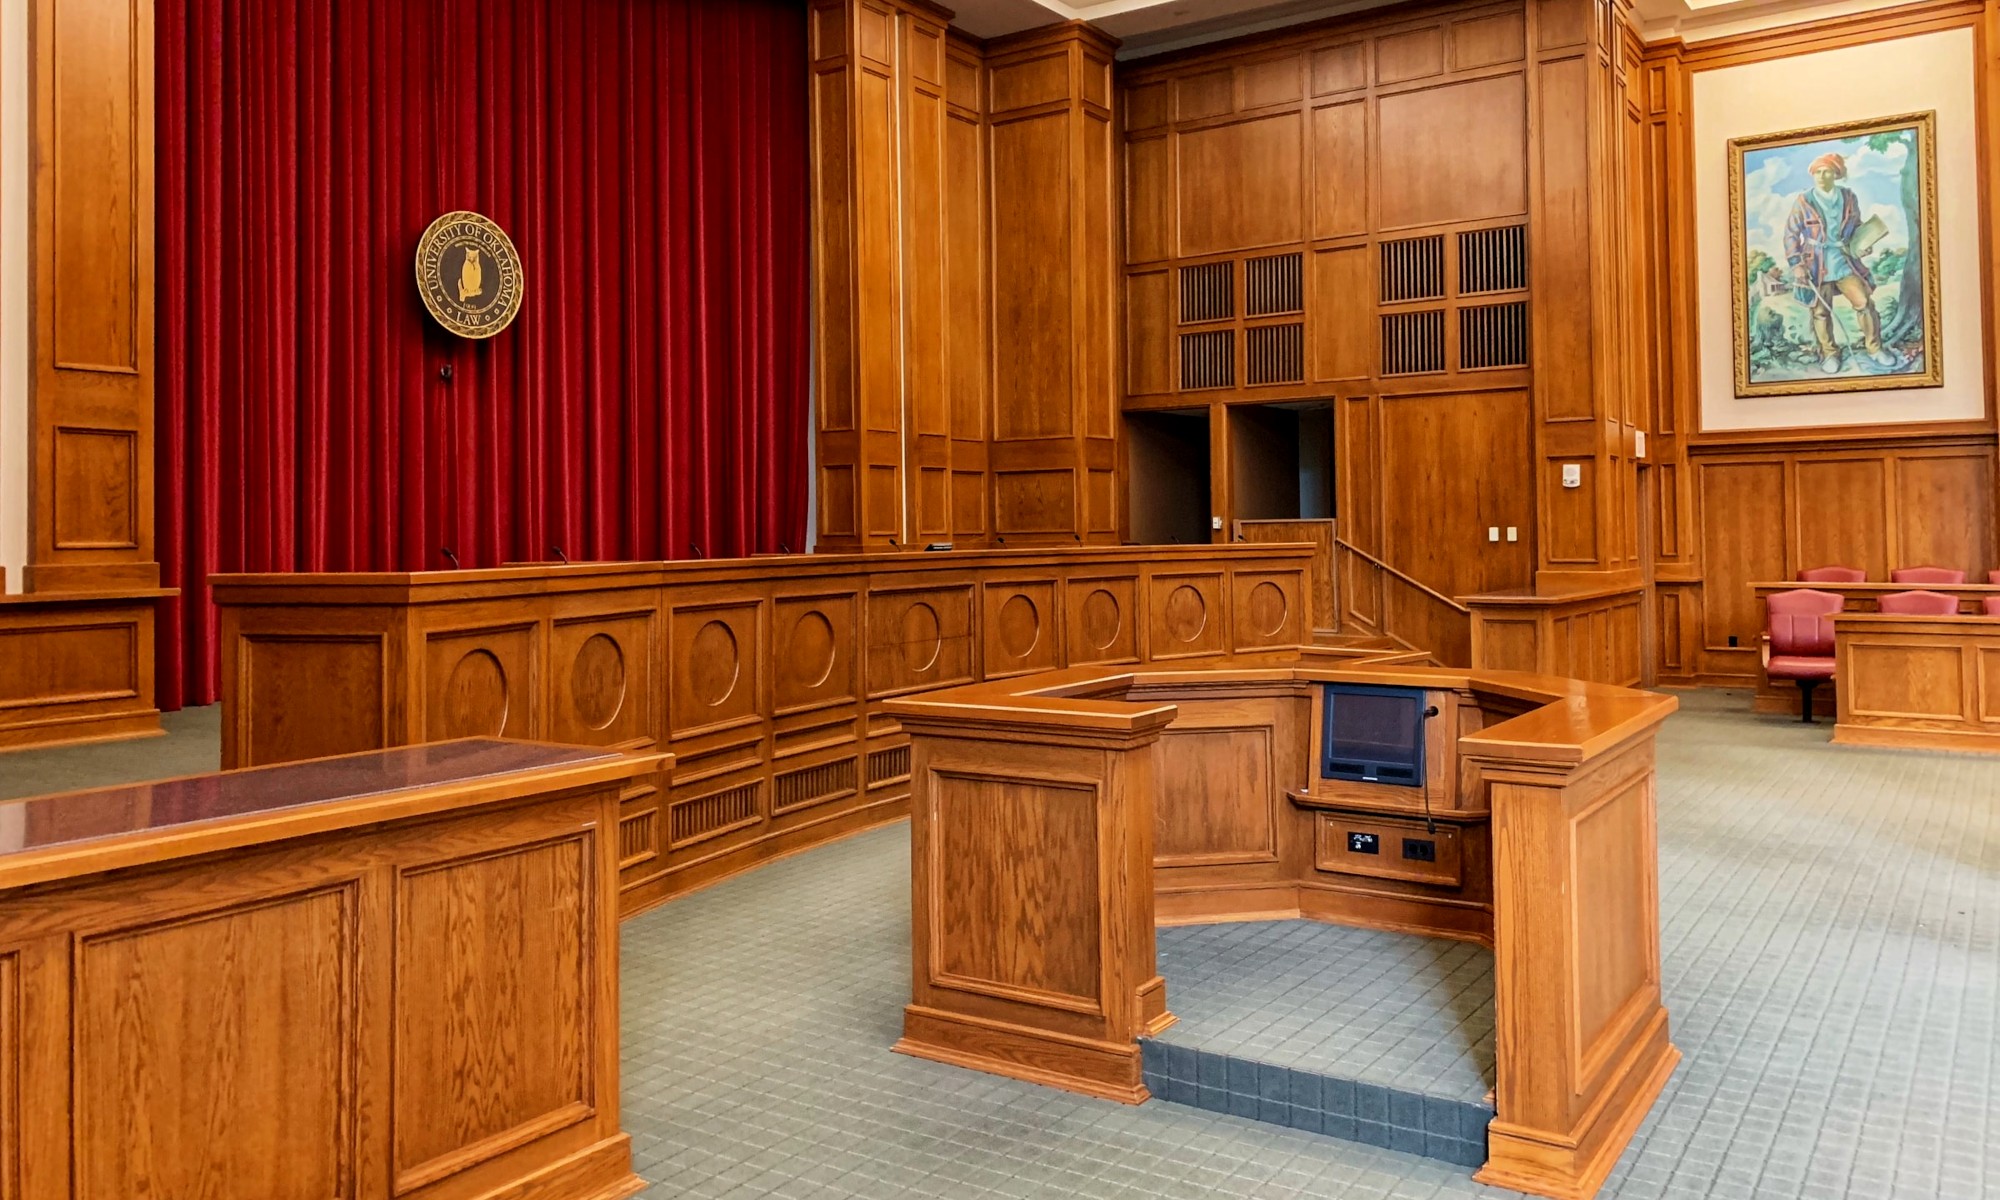 OKC Law School courtroom by David Veksler via Unsplash